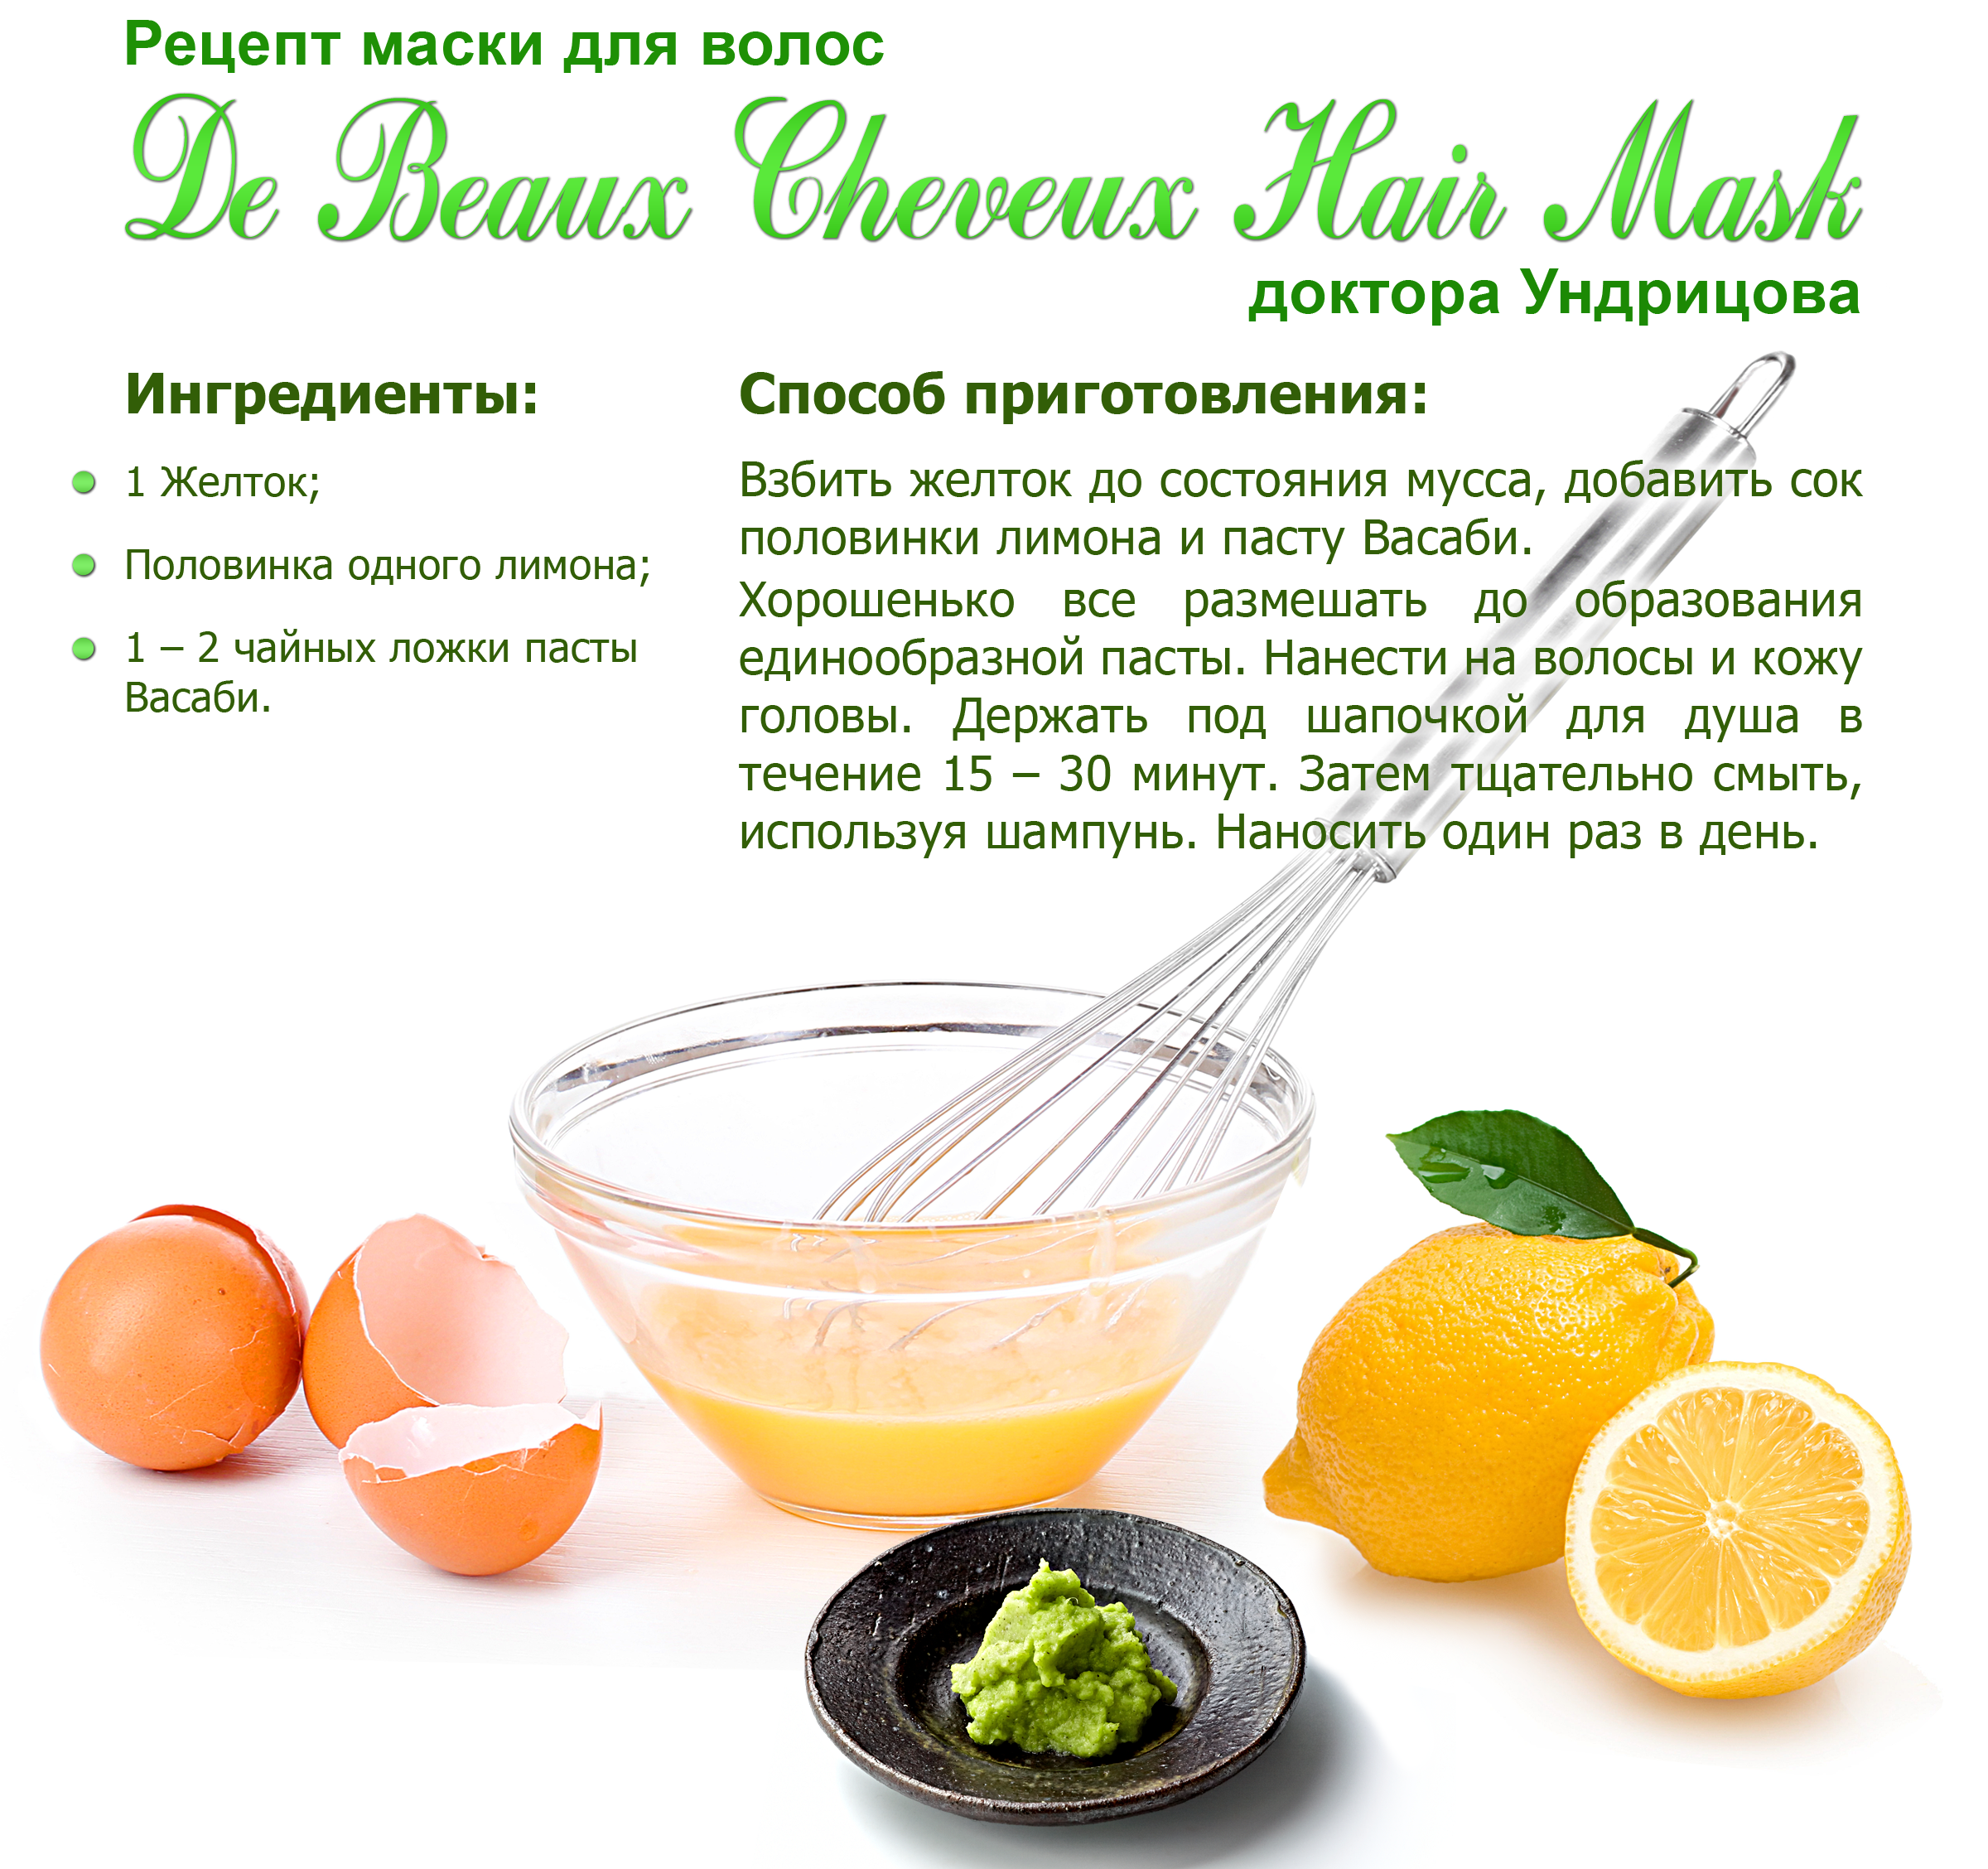 Блог от иоаннымаски для увлажнения волос в домашних условиях: рецепты для окрашенных, блондинок и брюнеток
маски для увлажнения волос в домашних условиях: рецепты для окрашенных, блондинок и брюнеток